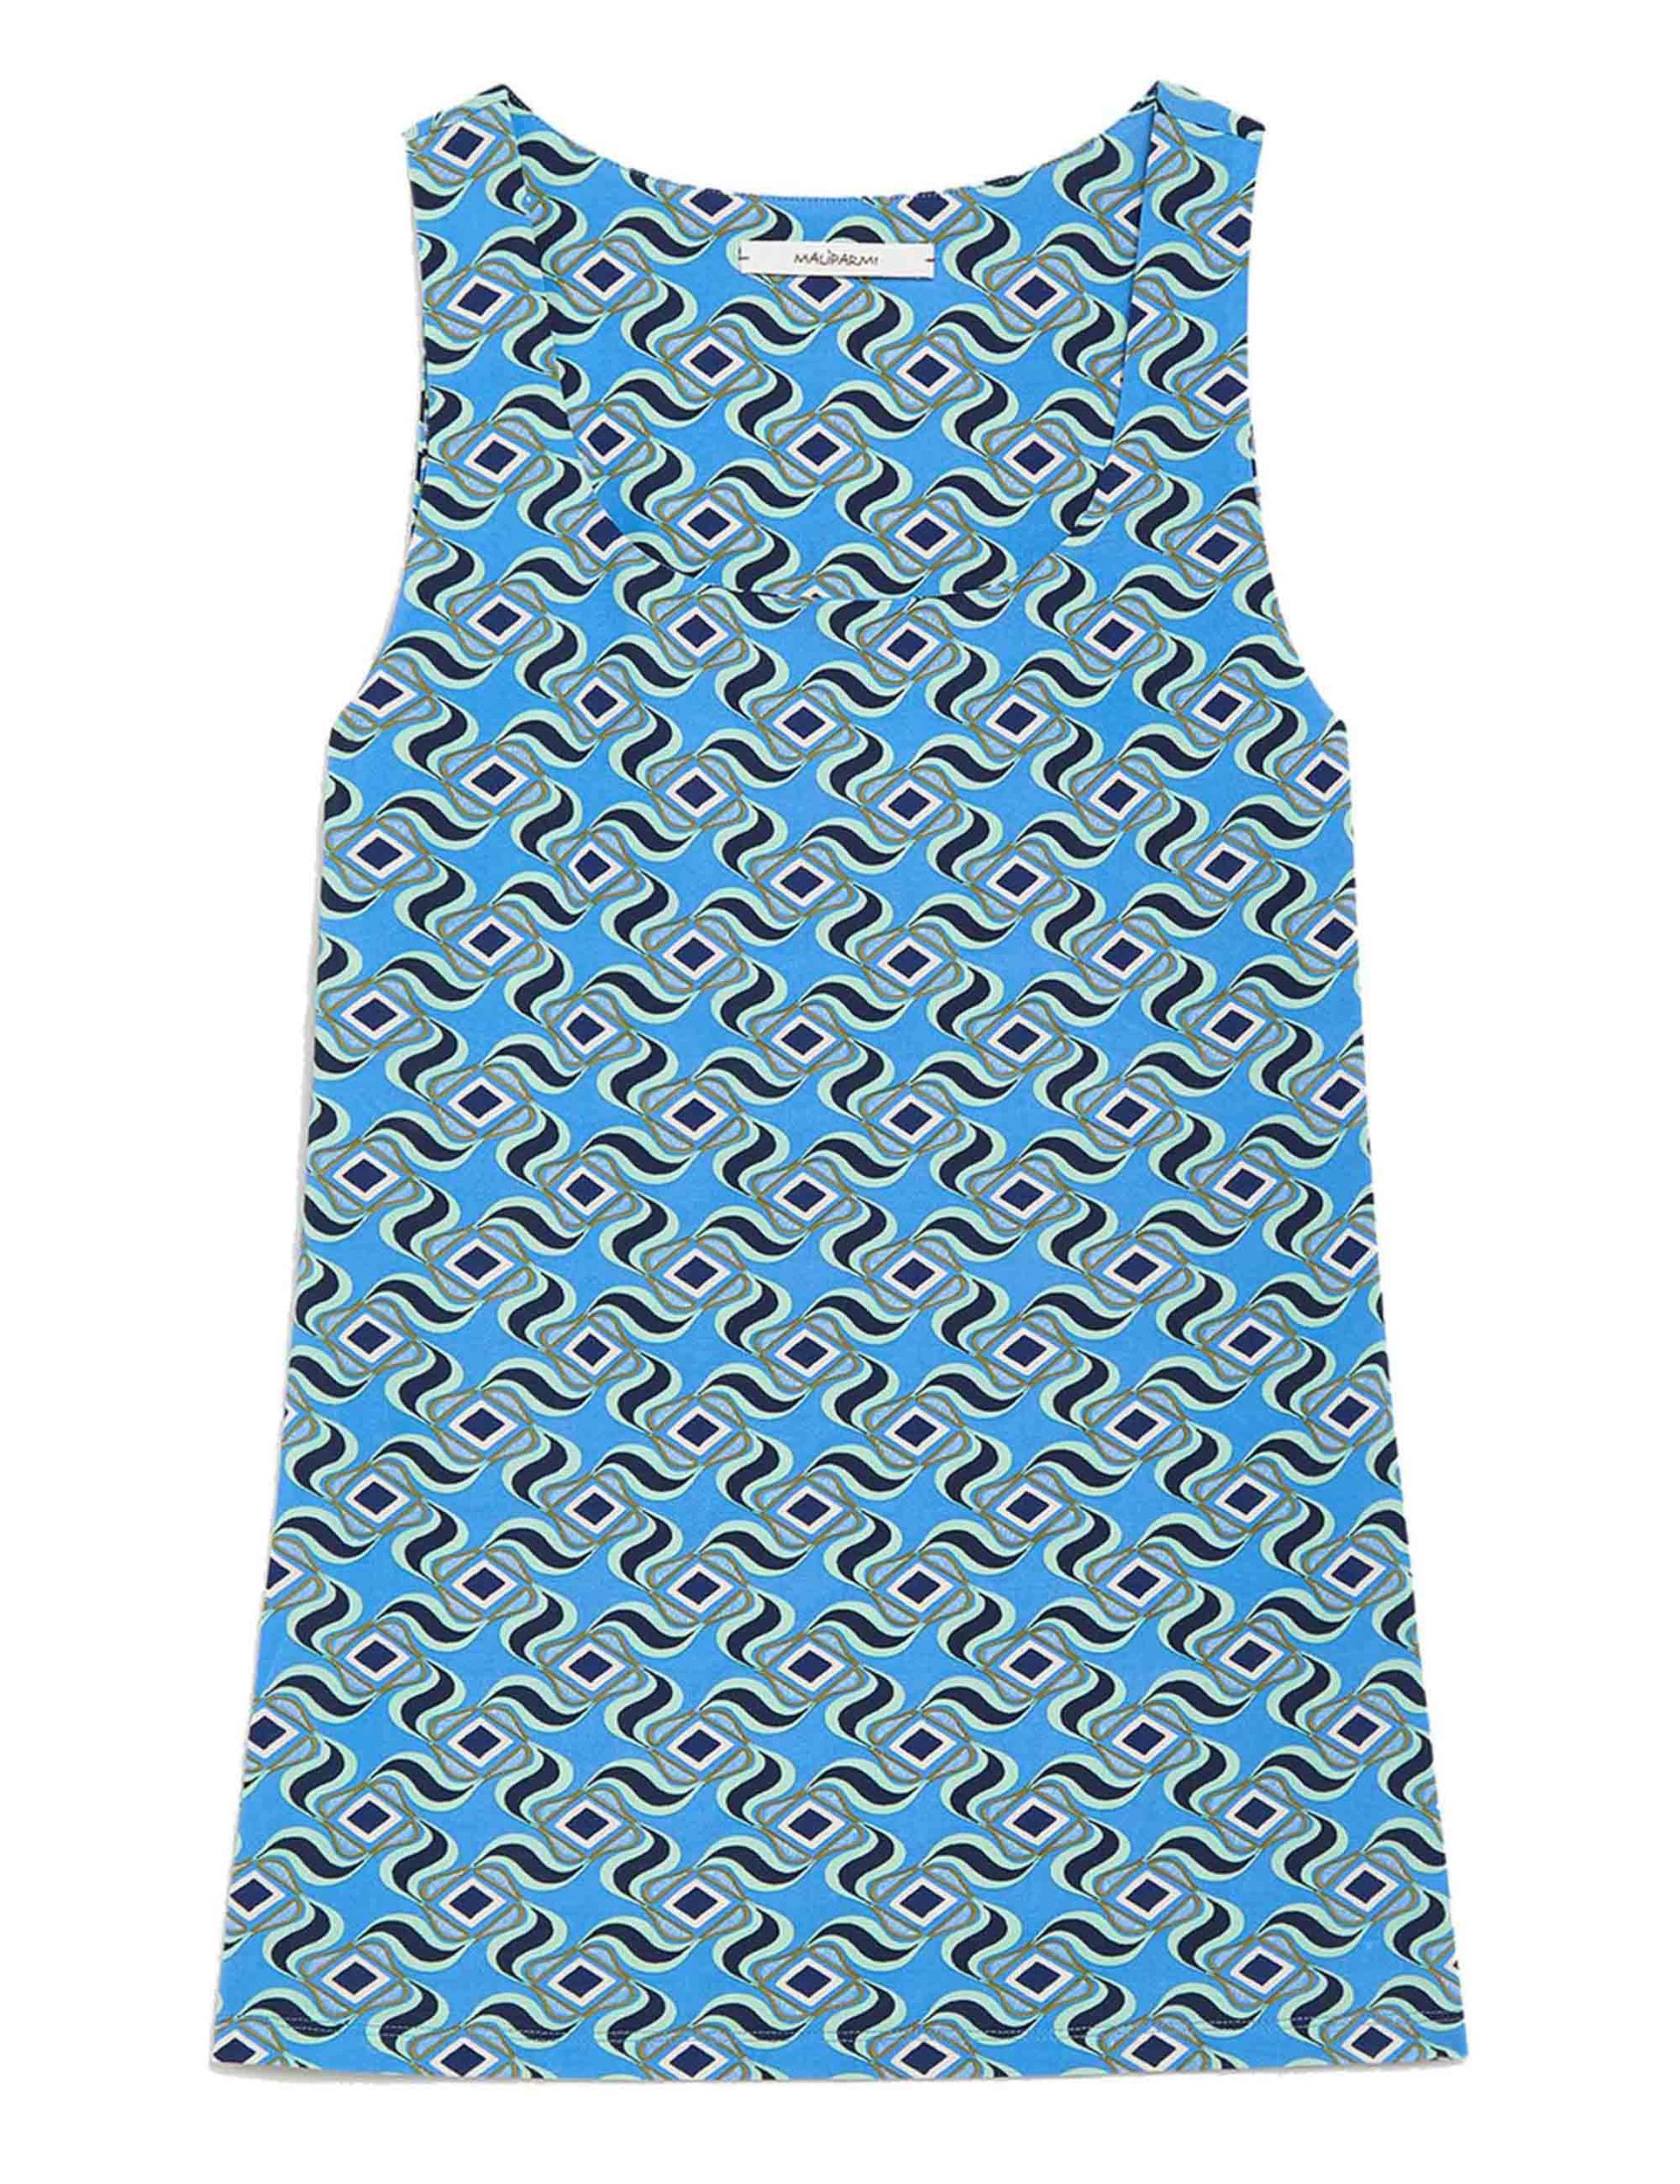 Swirl Print women's top in patterned light blue jersey